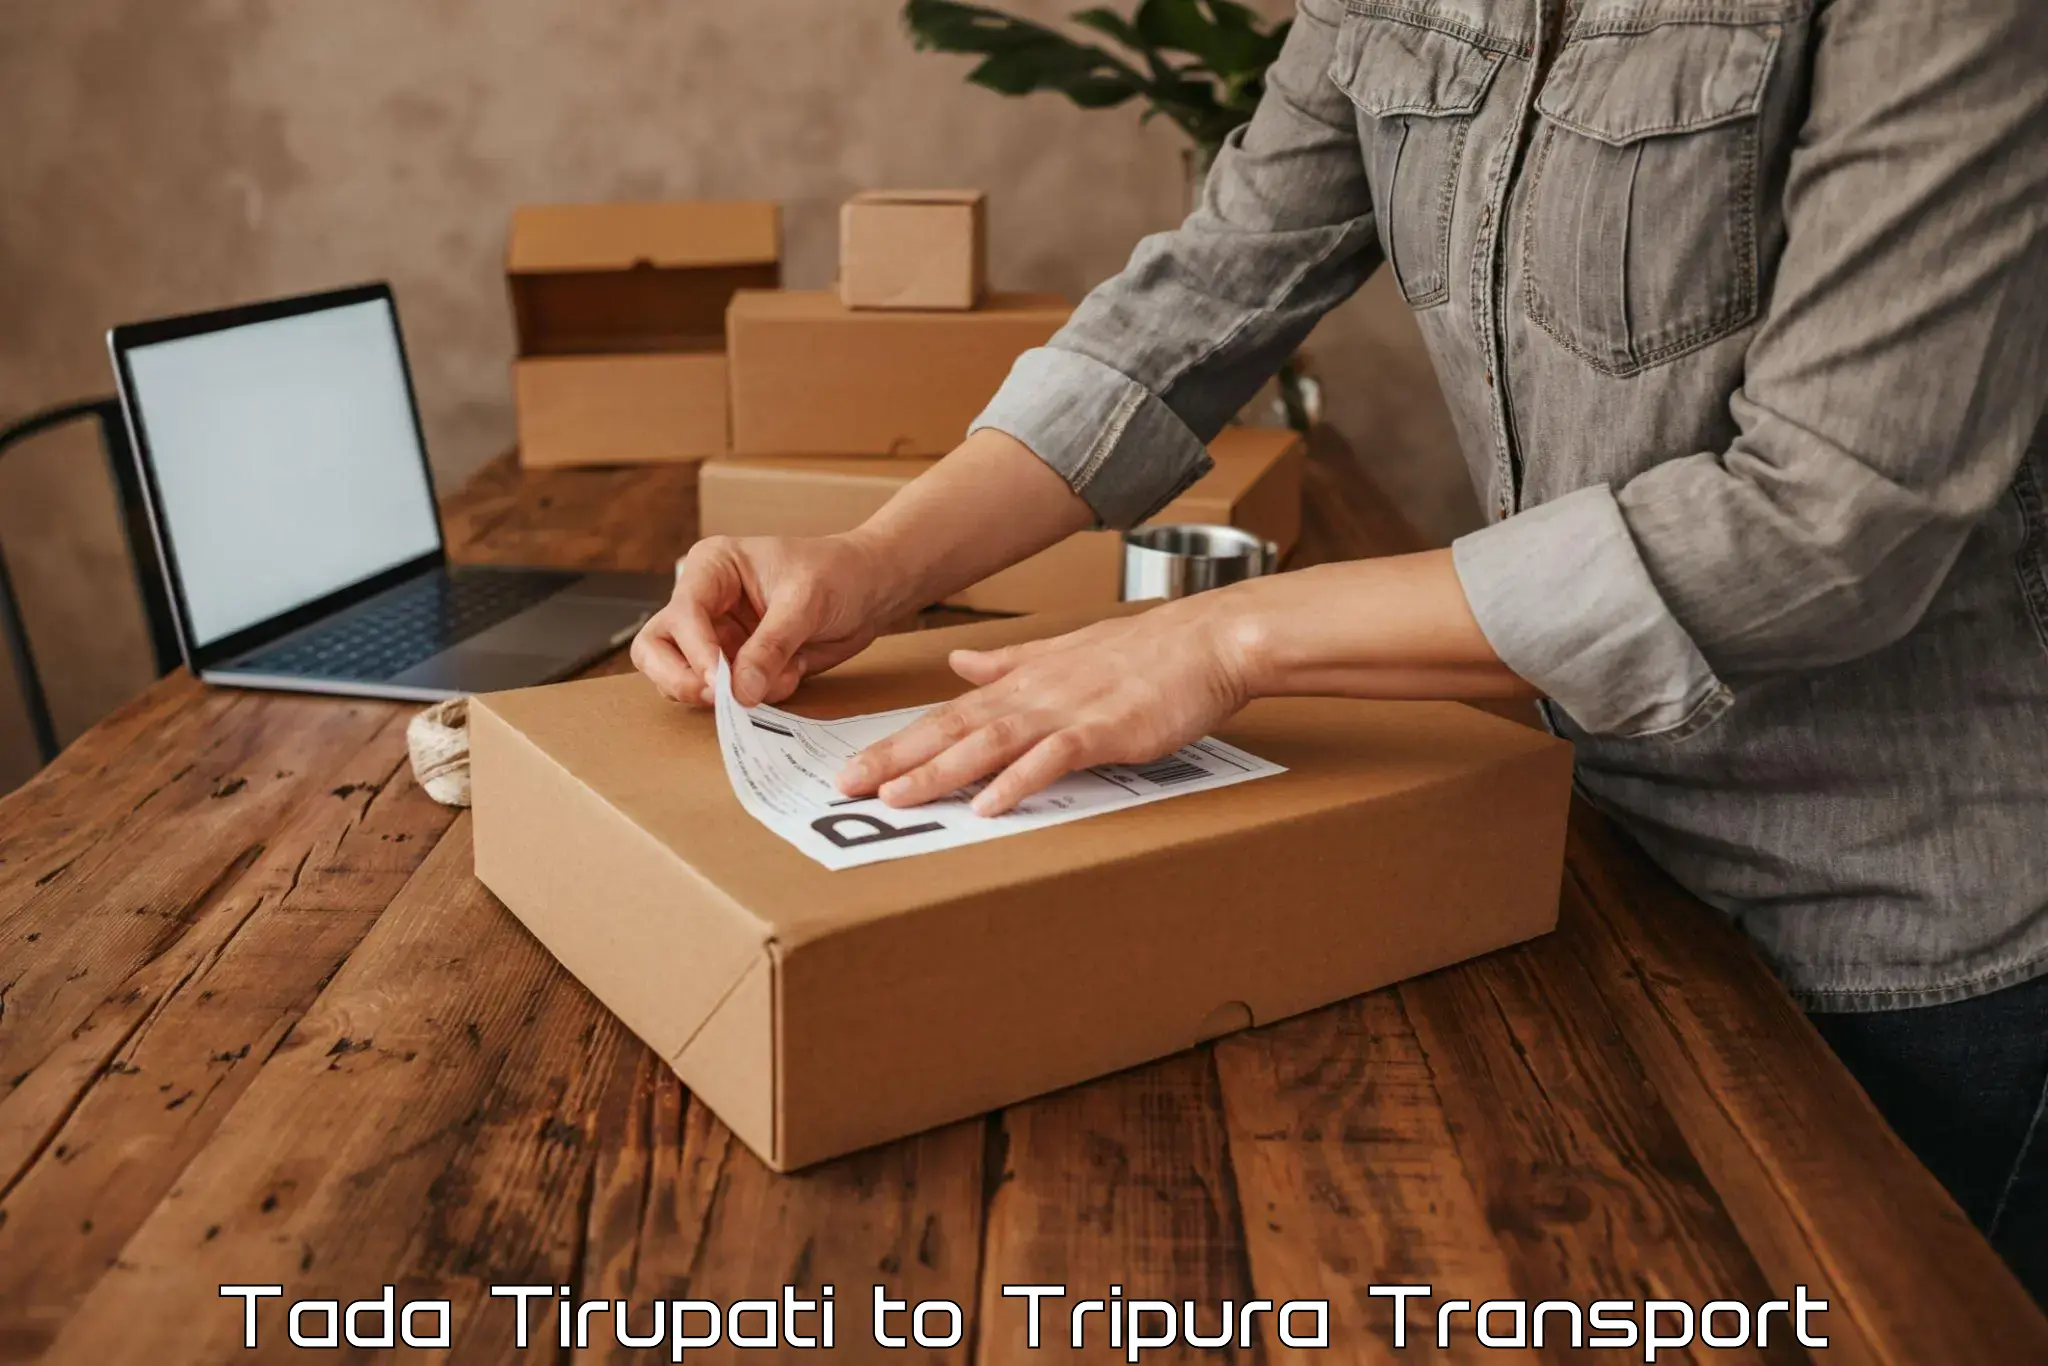 Daily transport service Tada Tirupati to Kailashahar